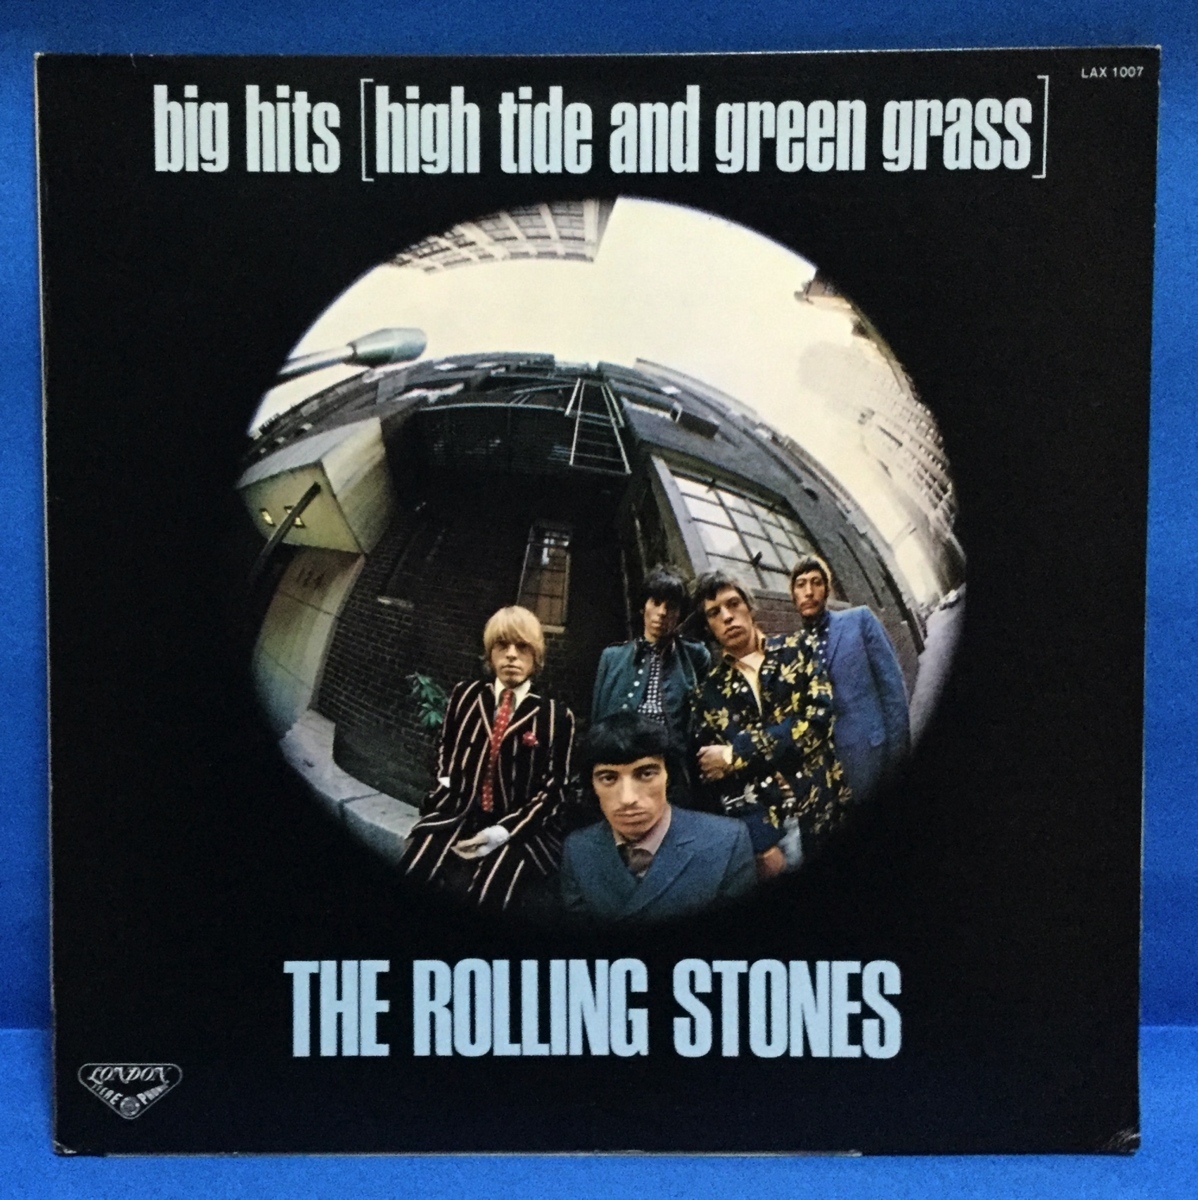 売れ筋ランキング 豪華ラッピング無料 LP 洋楽 The Rolling Stones Big Hits High Tide And Green Grass 日本盤 frisurenwerk-cs.de frisurenwerk-cs.de